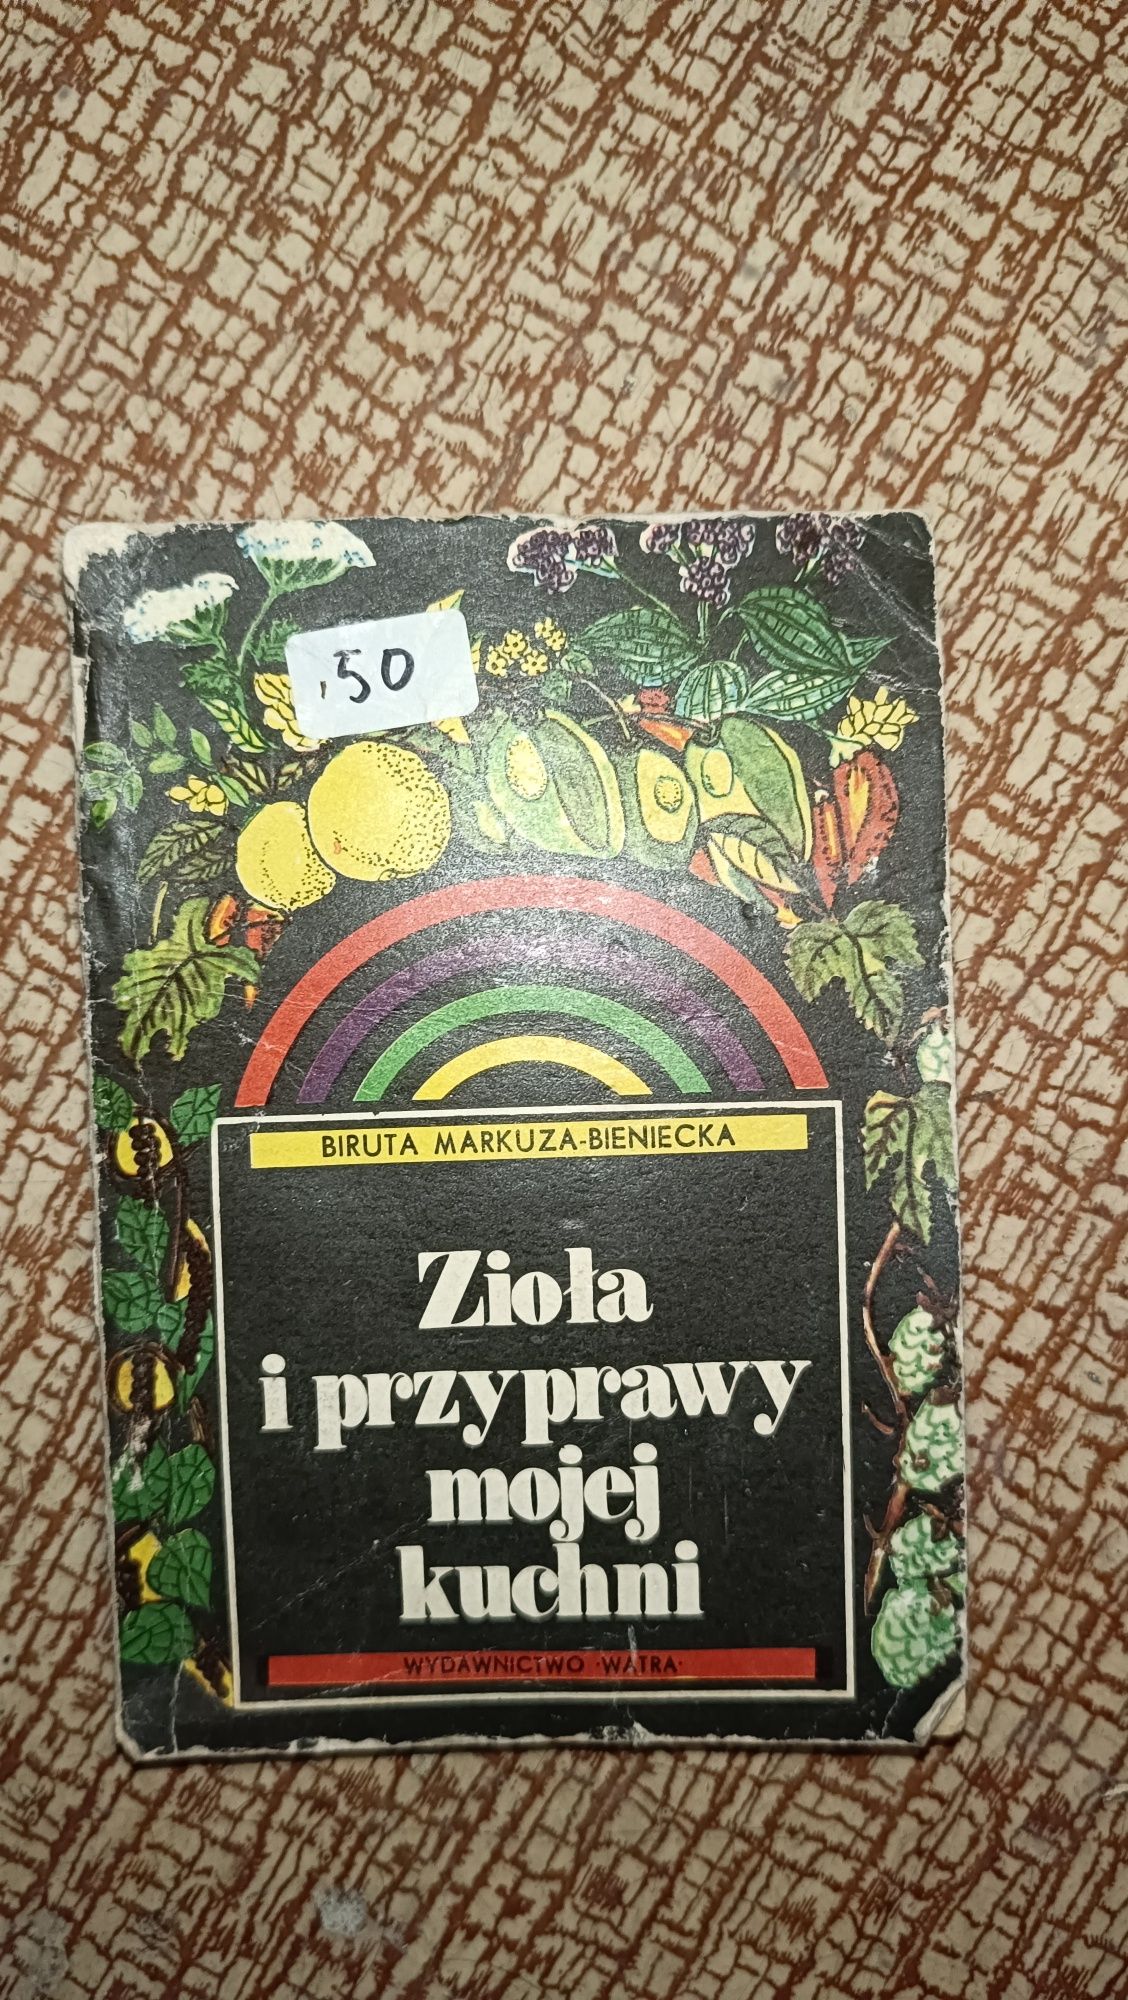 Книга рецептов на польском